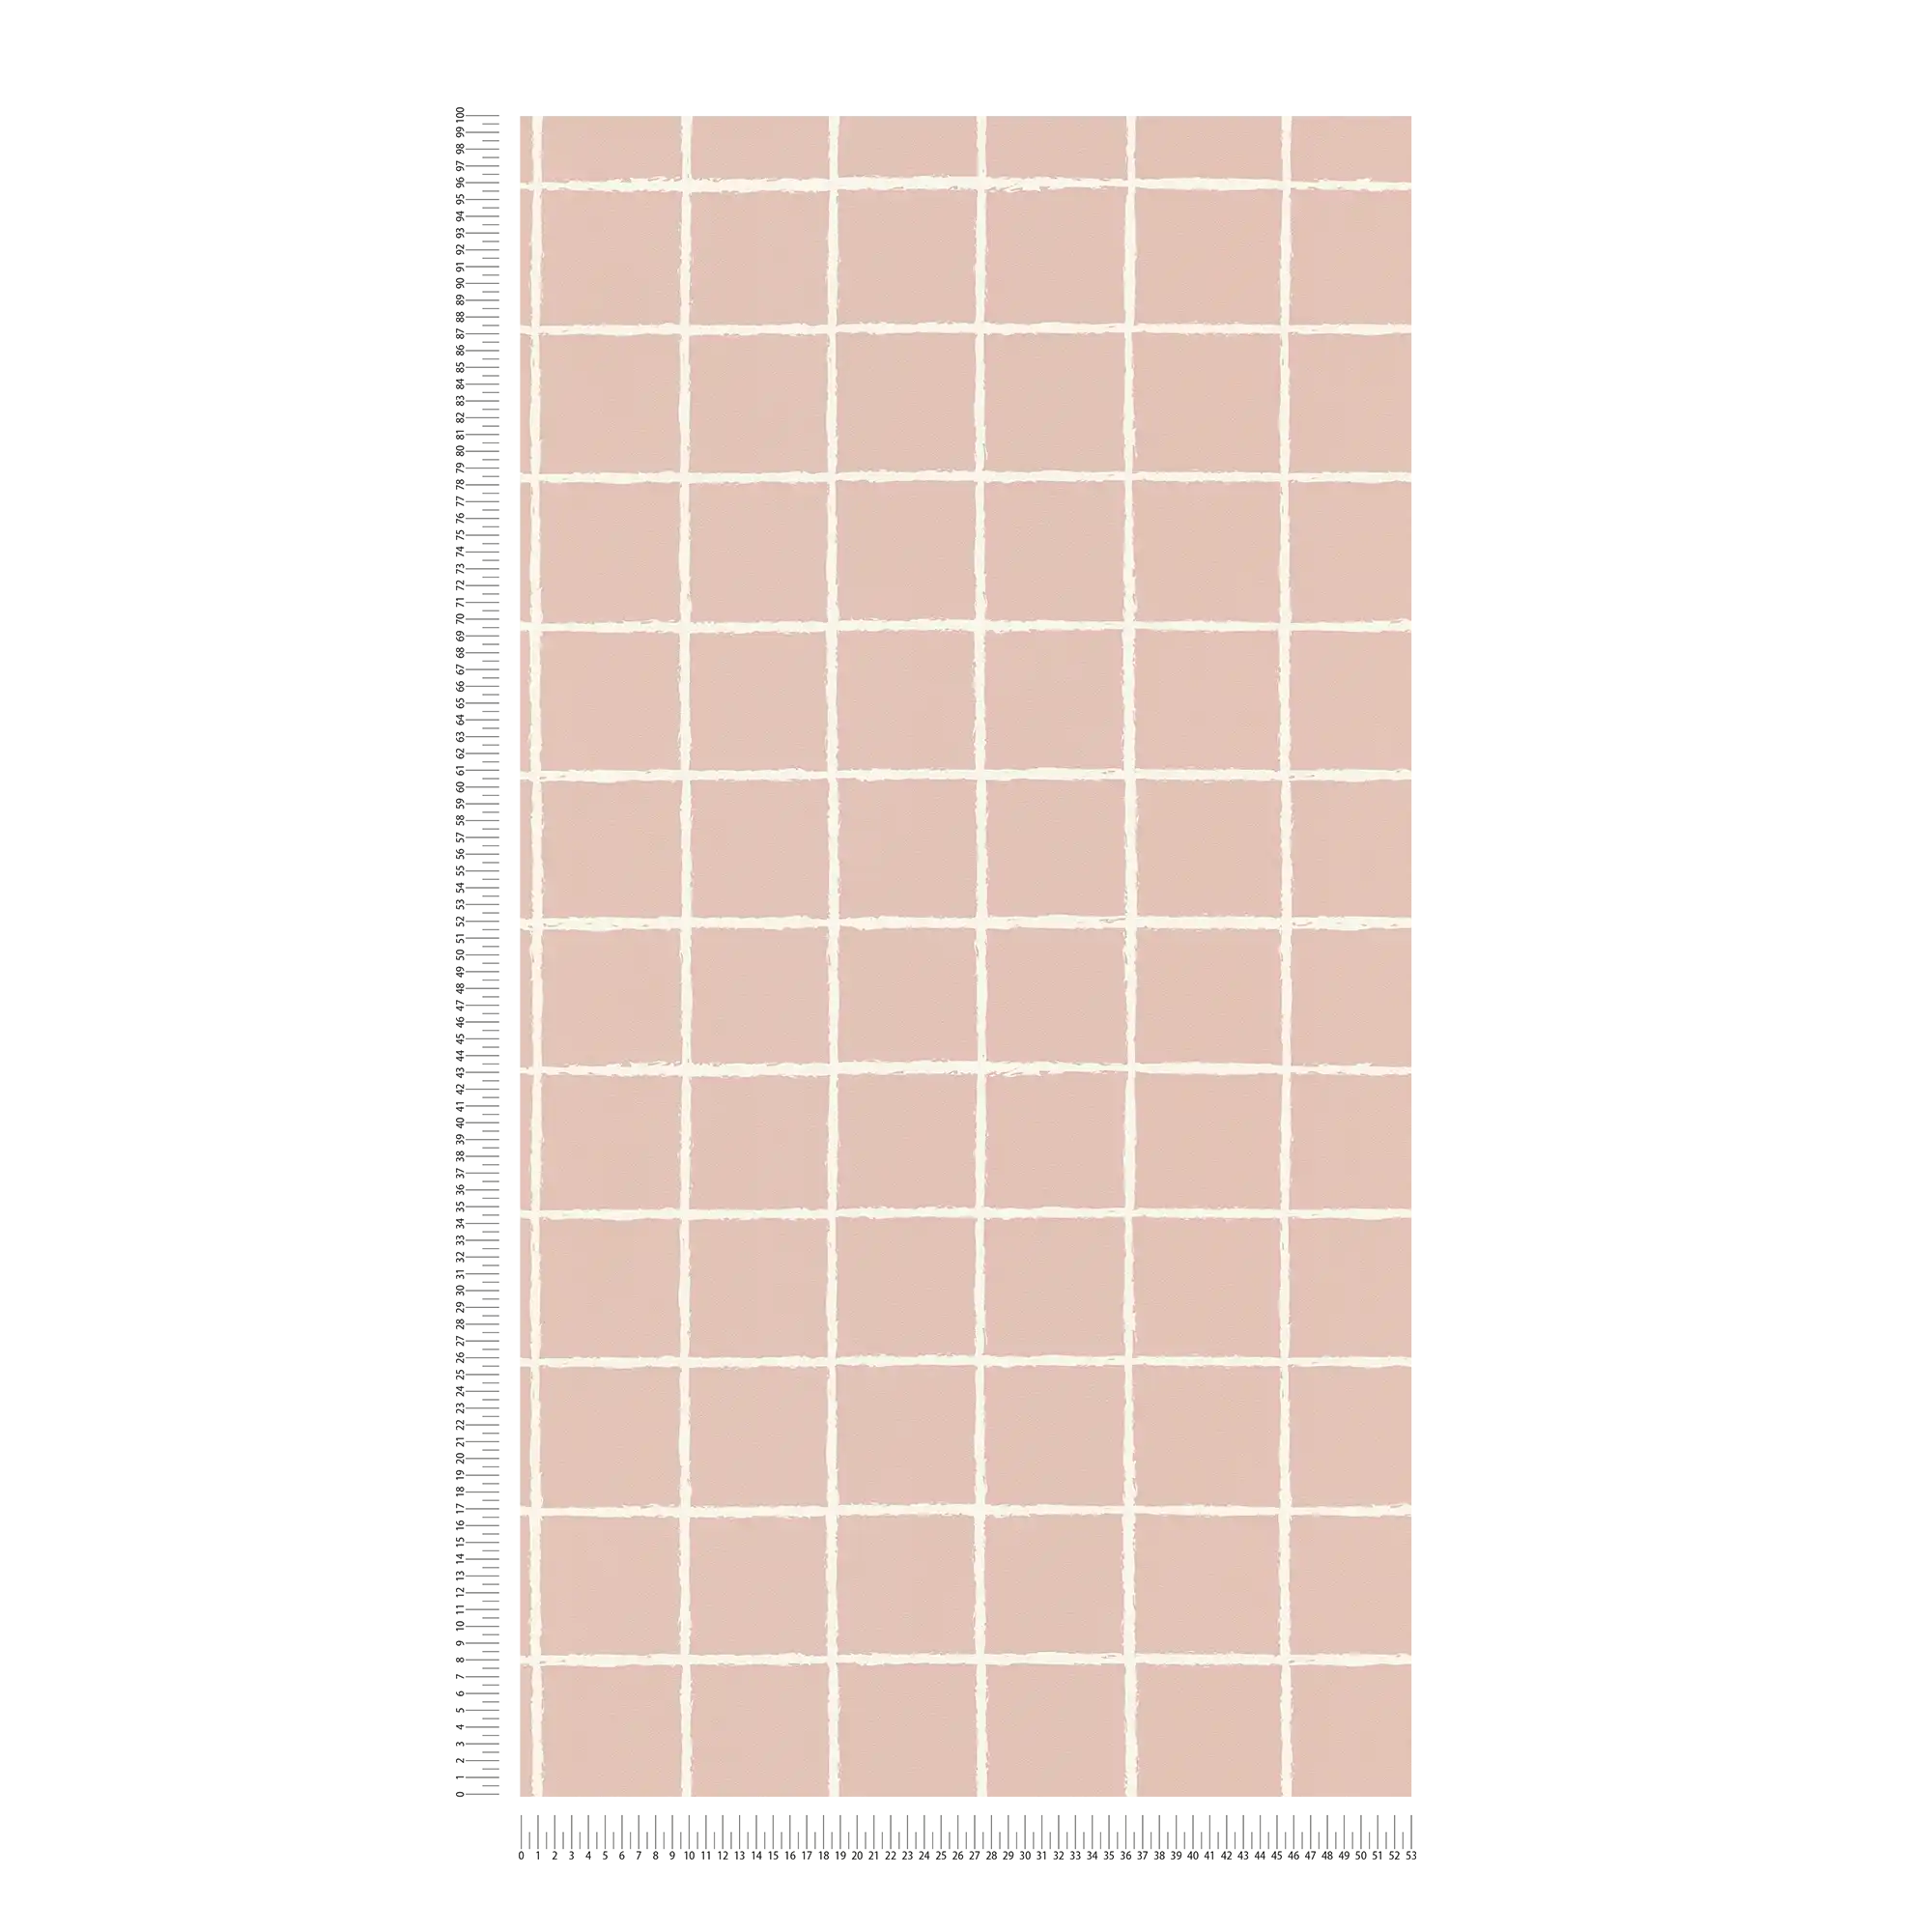             Carta da parati in tessuto non tessuto con motivo a rete disegnata - rosa, bianco
        